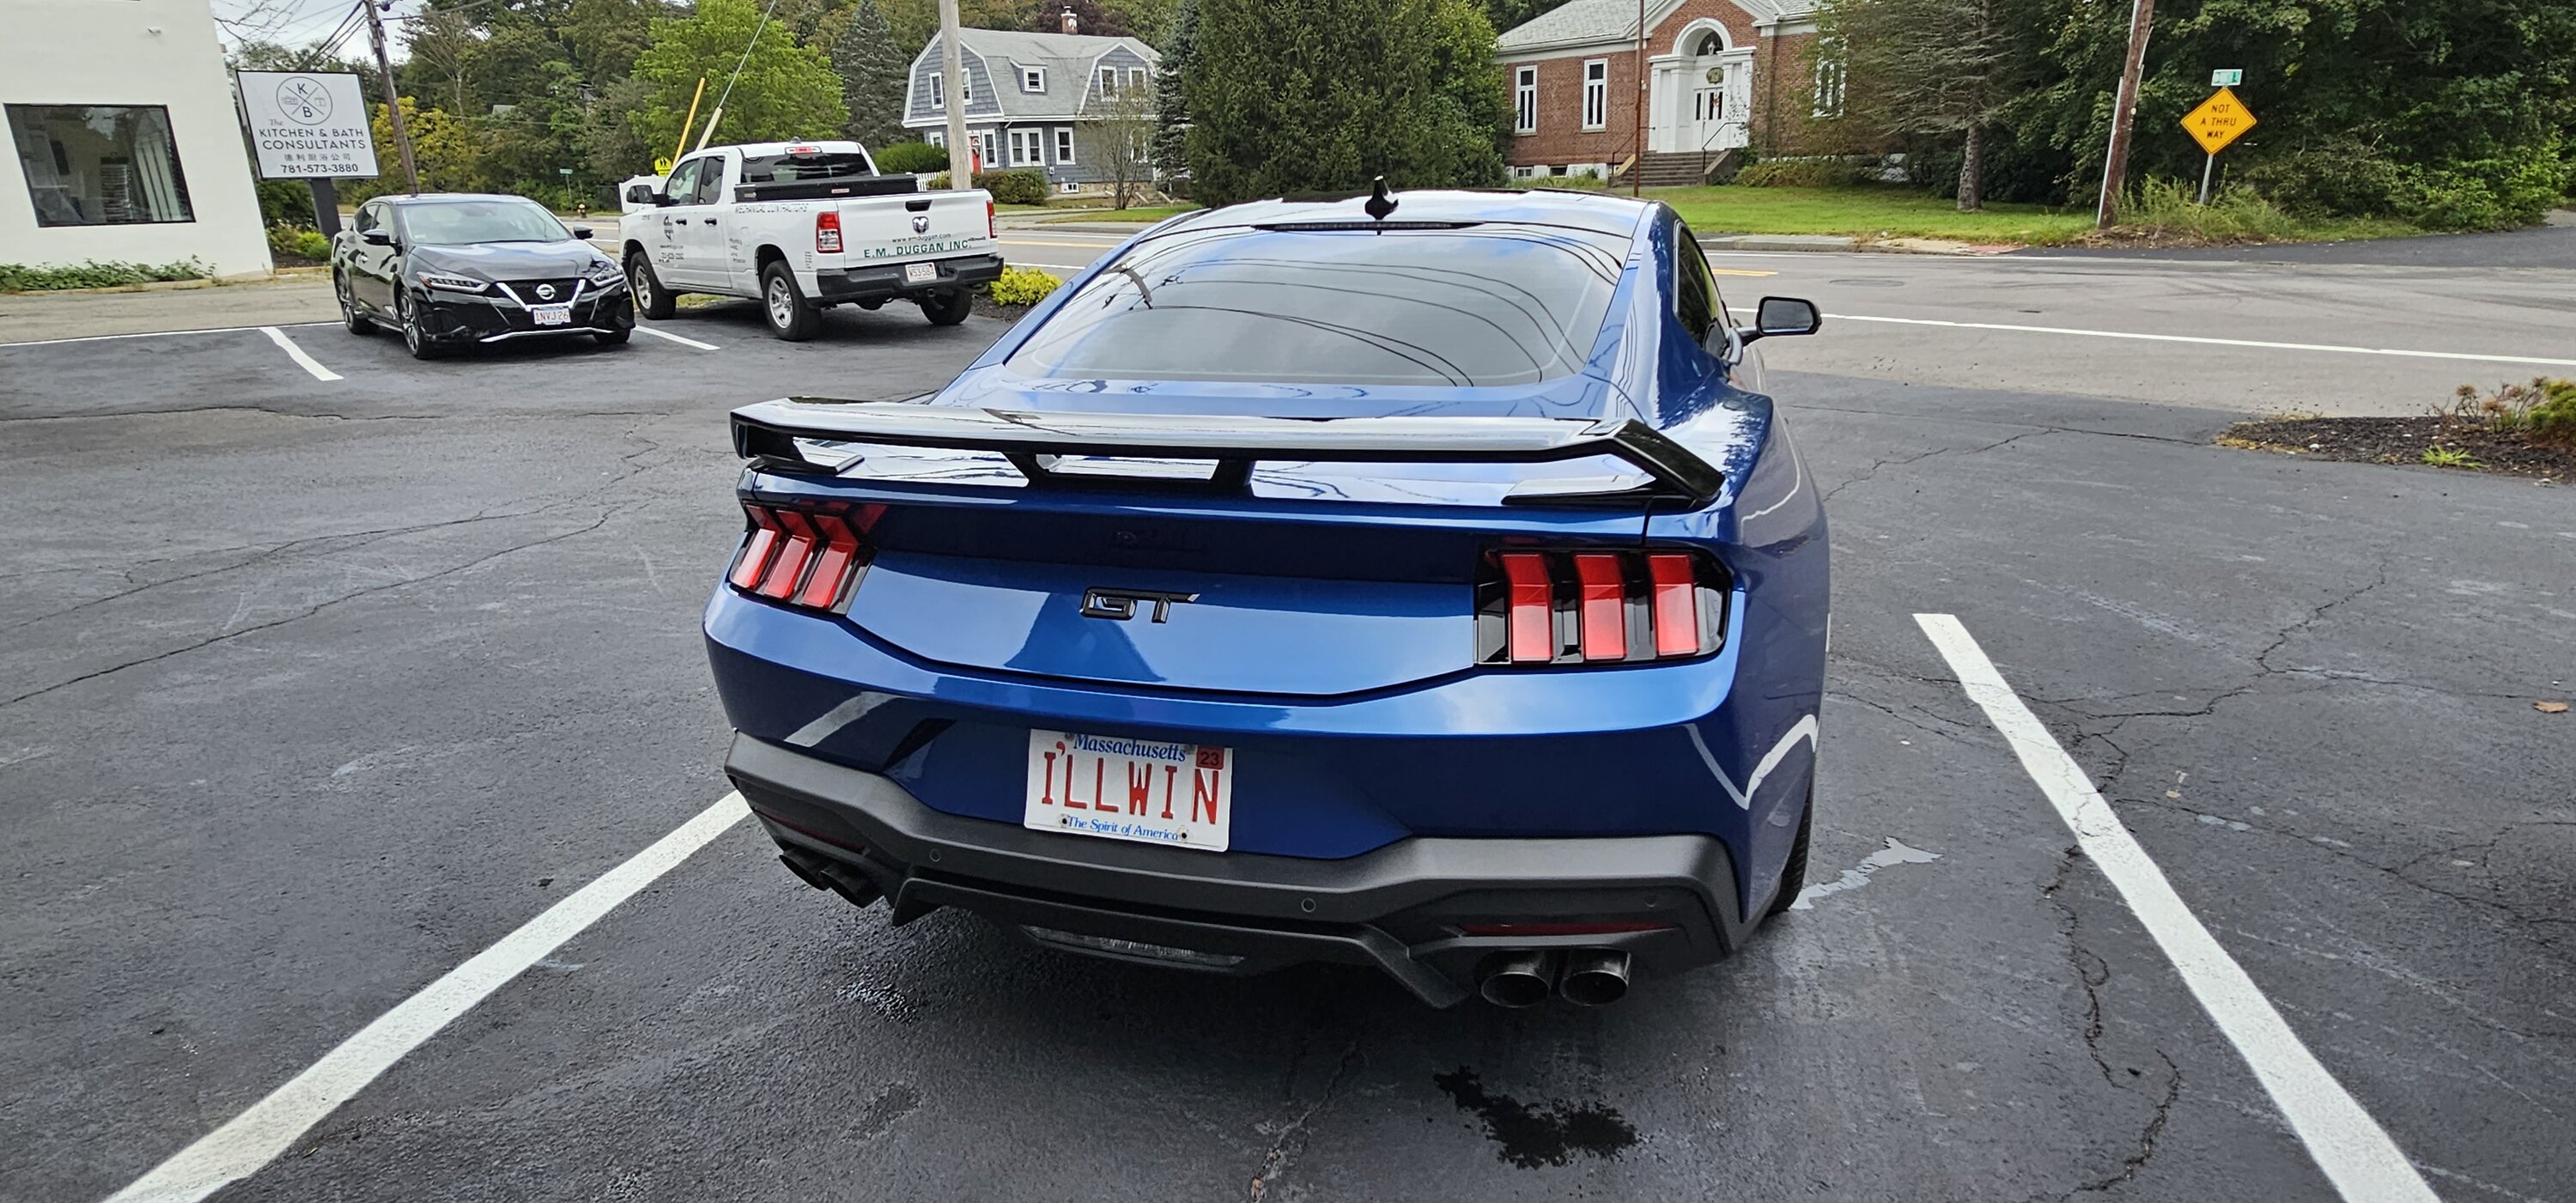 S650 Mustang Vanity / custom license plate ideas? 20230926_135218